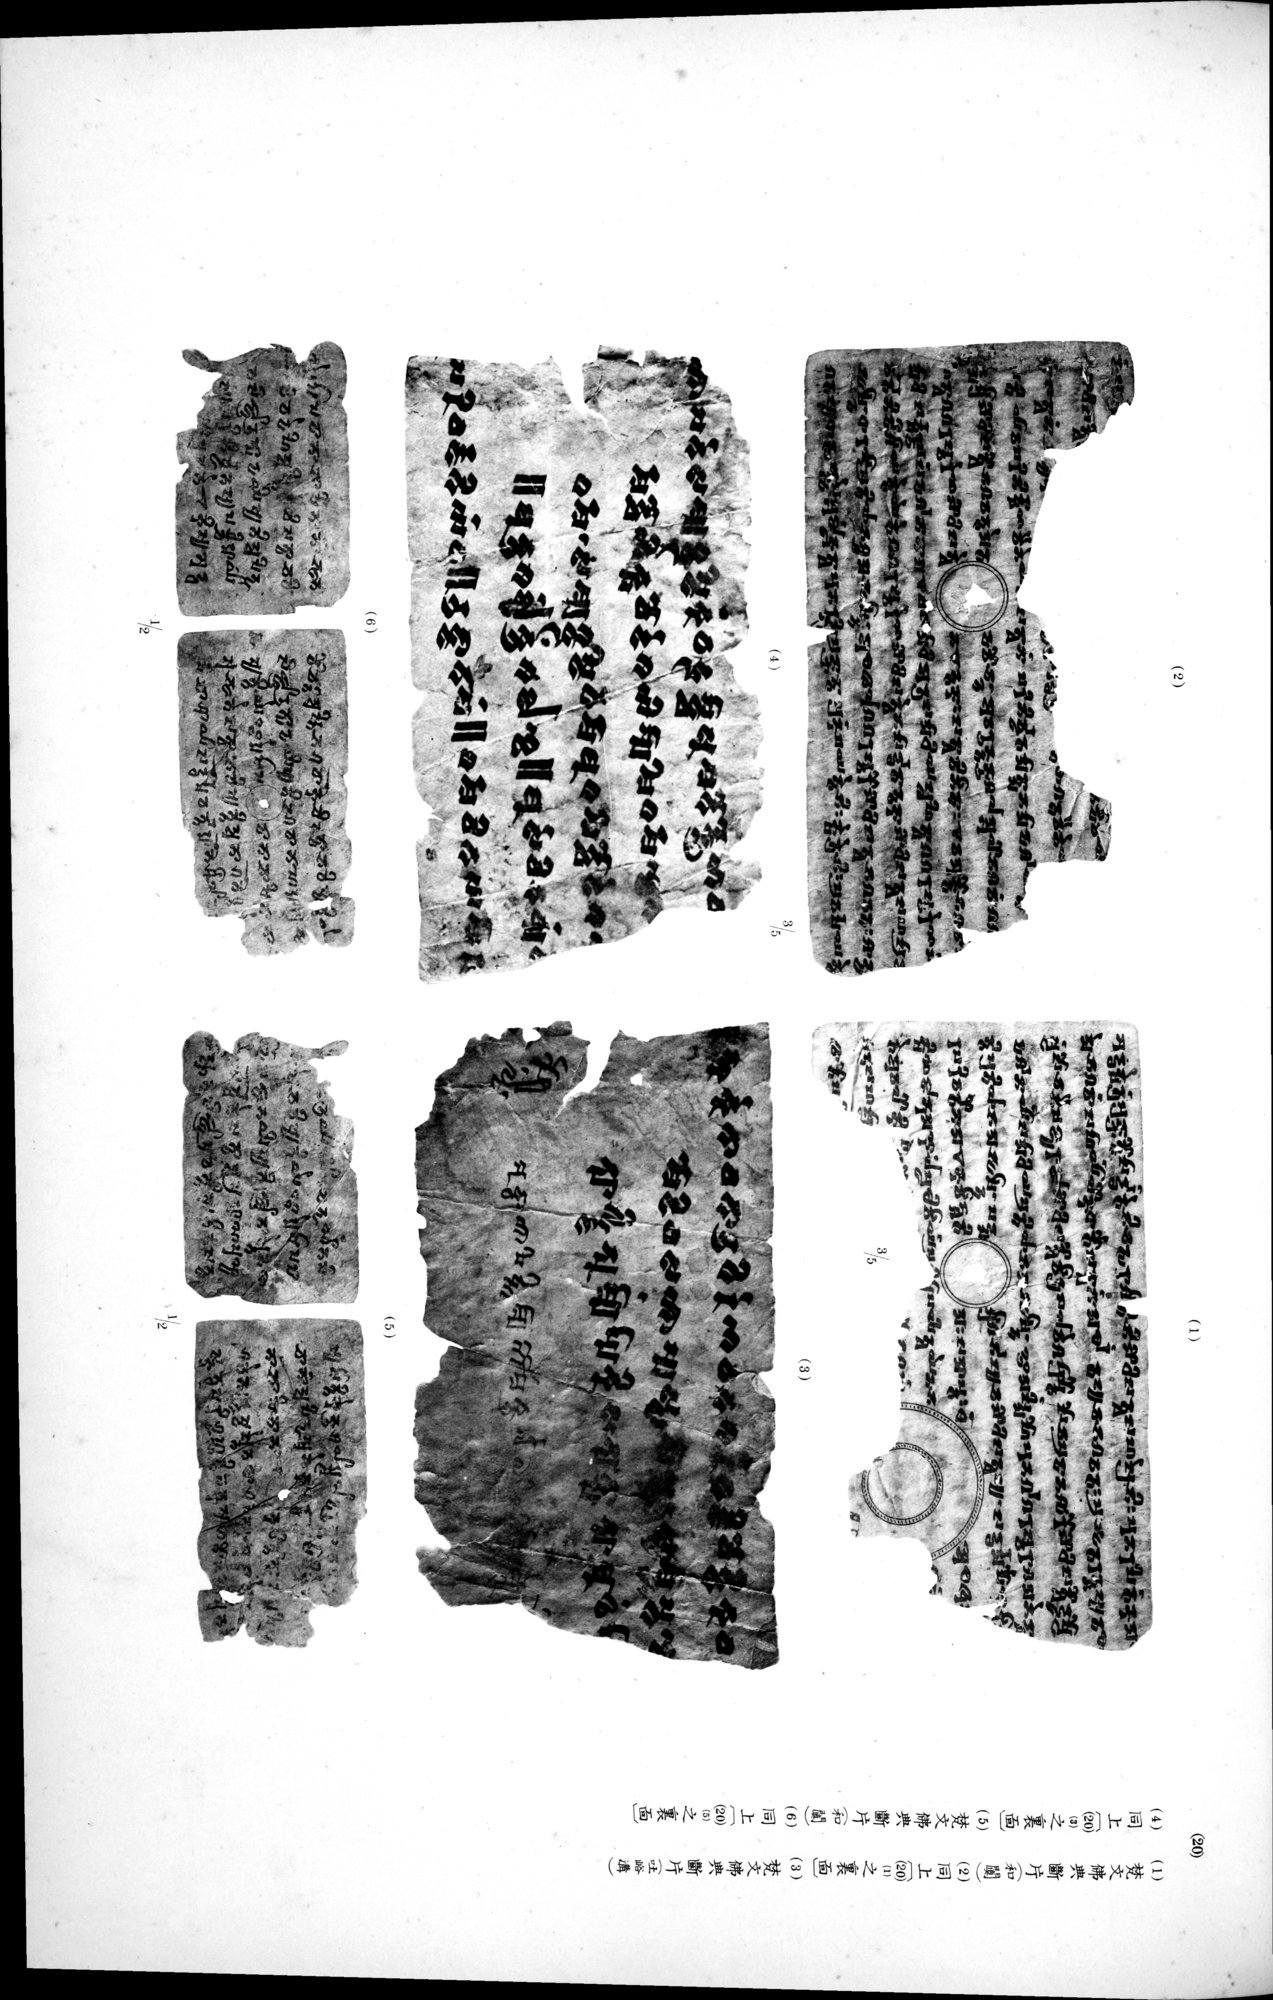 西域考古図譜 : vol.2 / Page 293 (Grayscale High Resolution Image)